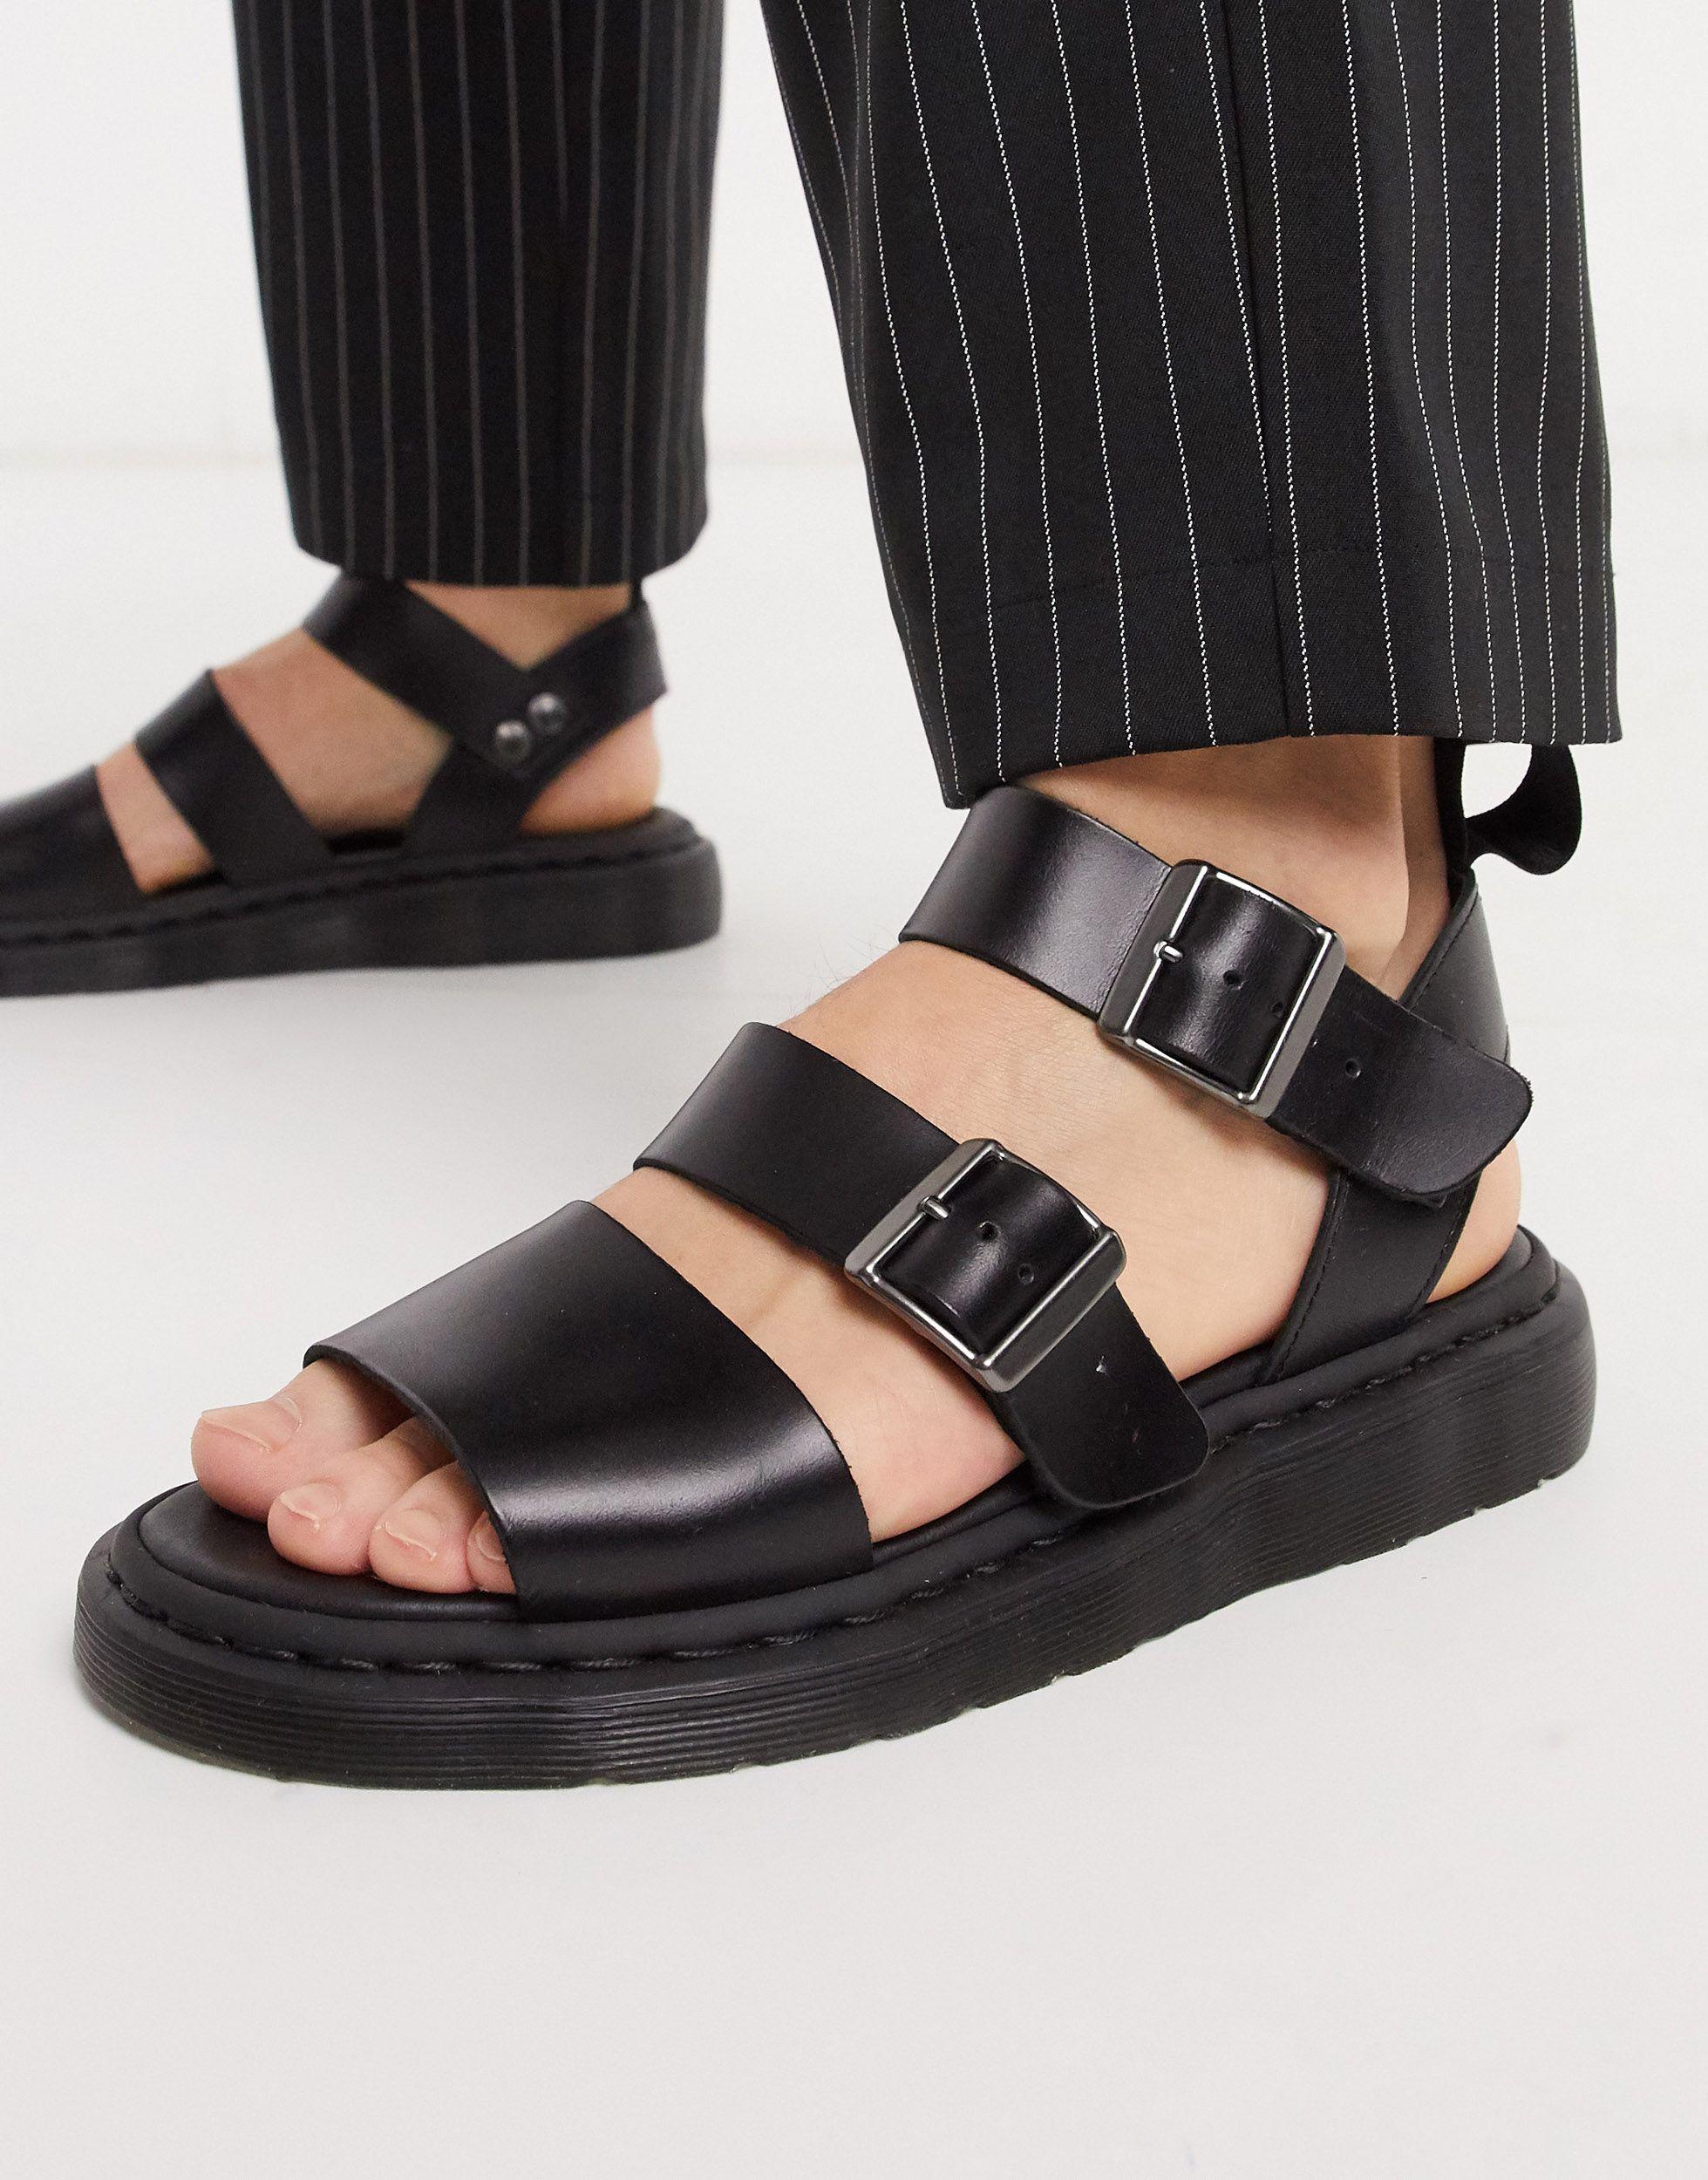 Dr. Martens Leather Gryphon Strap Sandals in Black for Men - Lyst